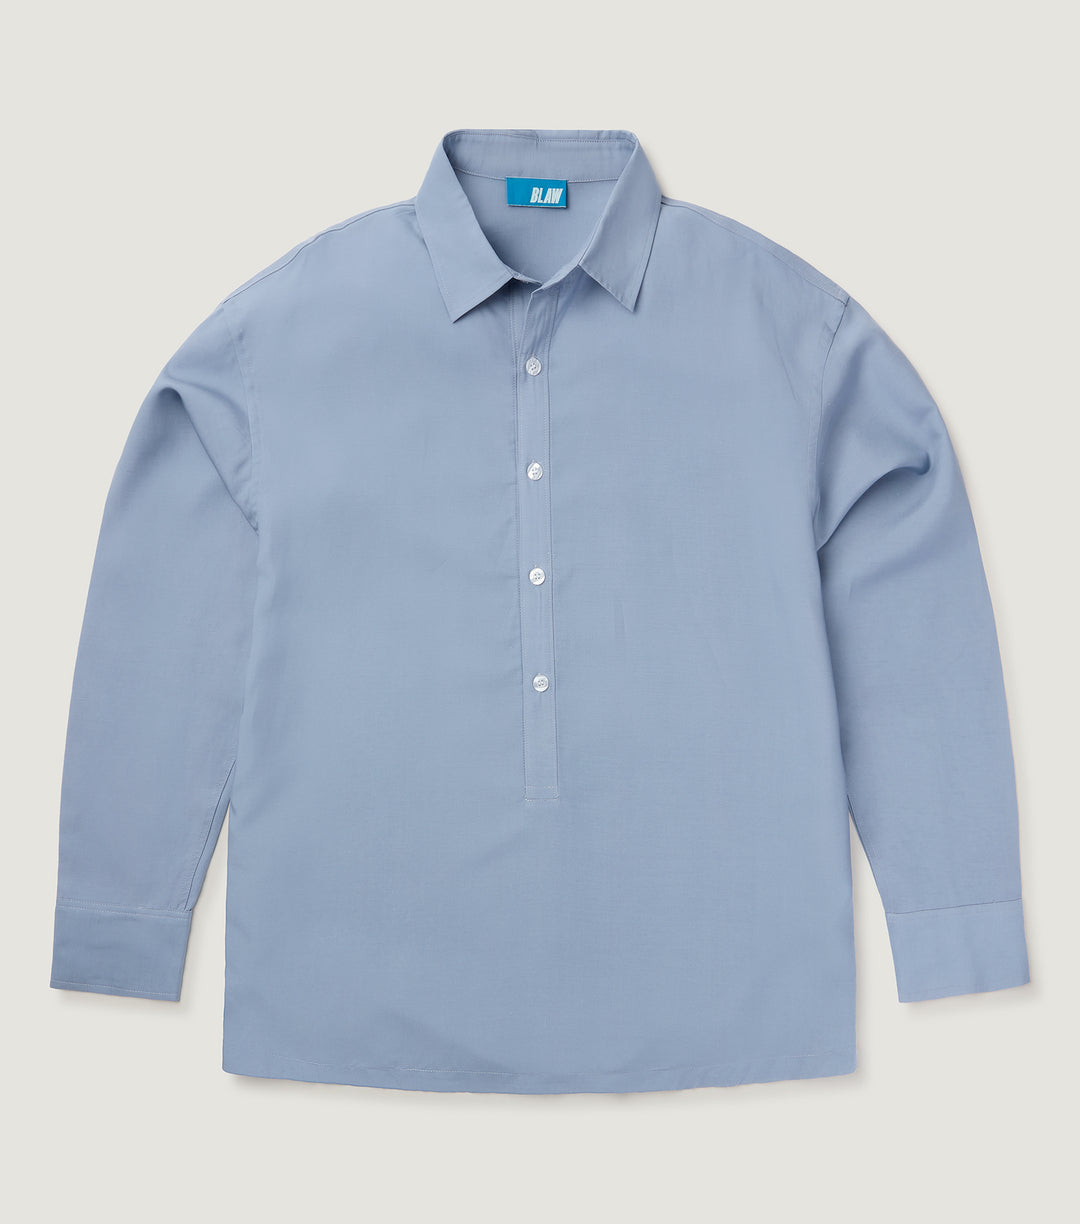 Linen Polera Shirt Blue - BLAW